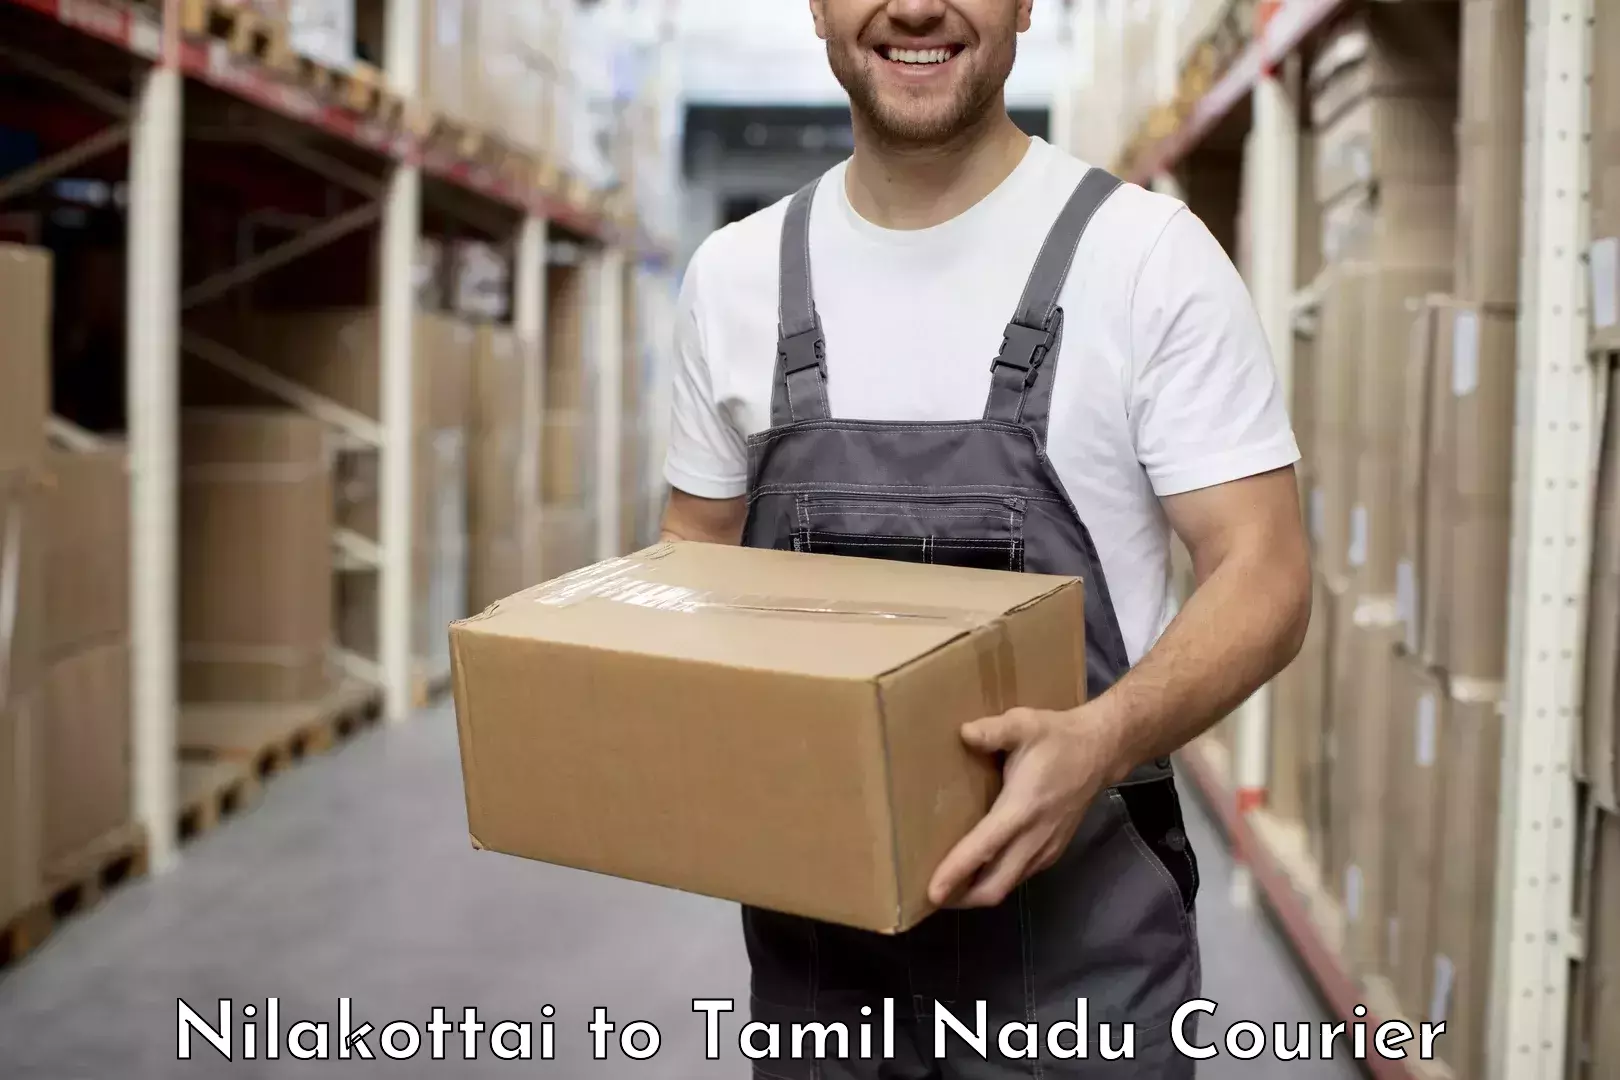 Optimized shipping services Nilakottai to Tamil Nadu